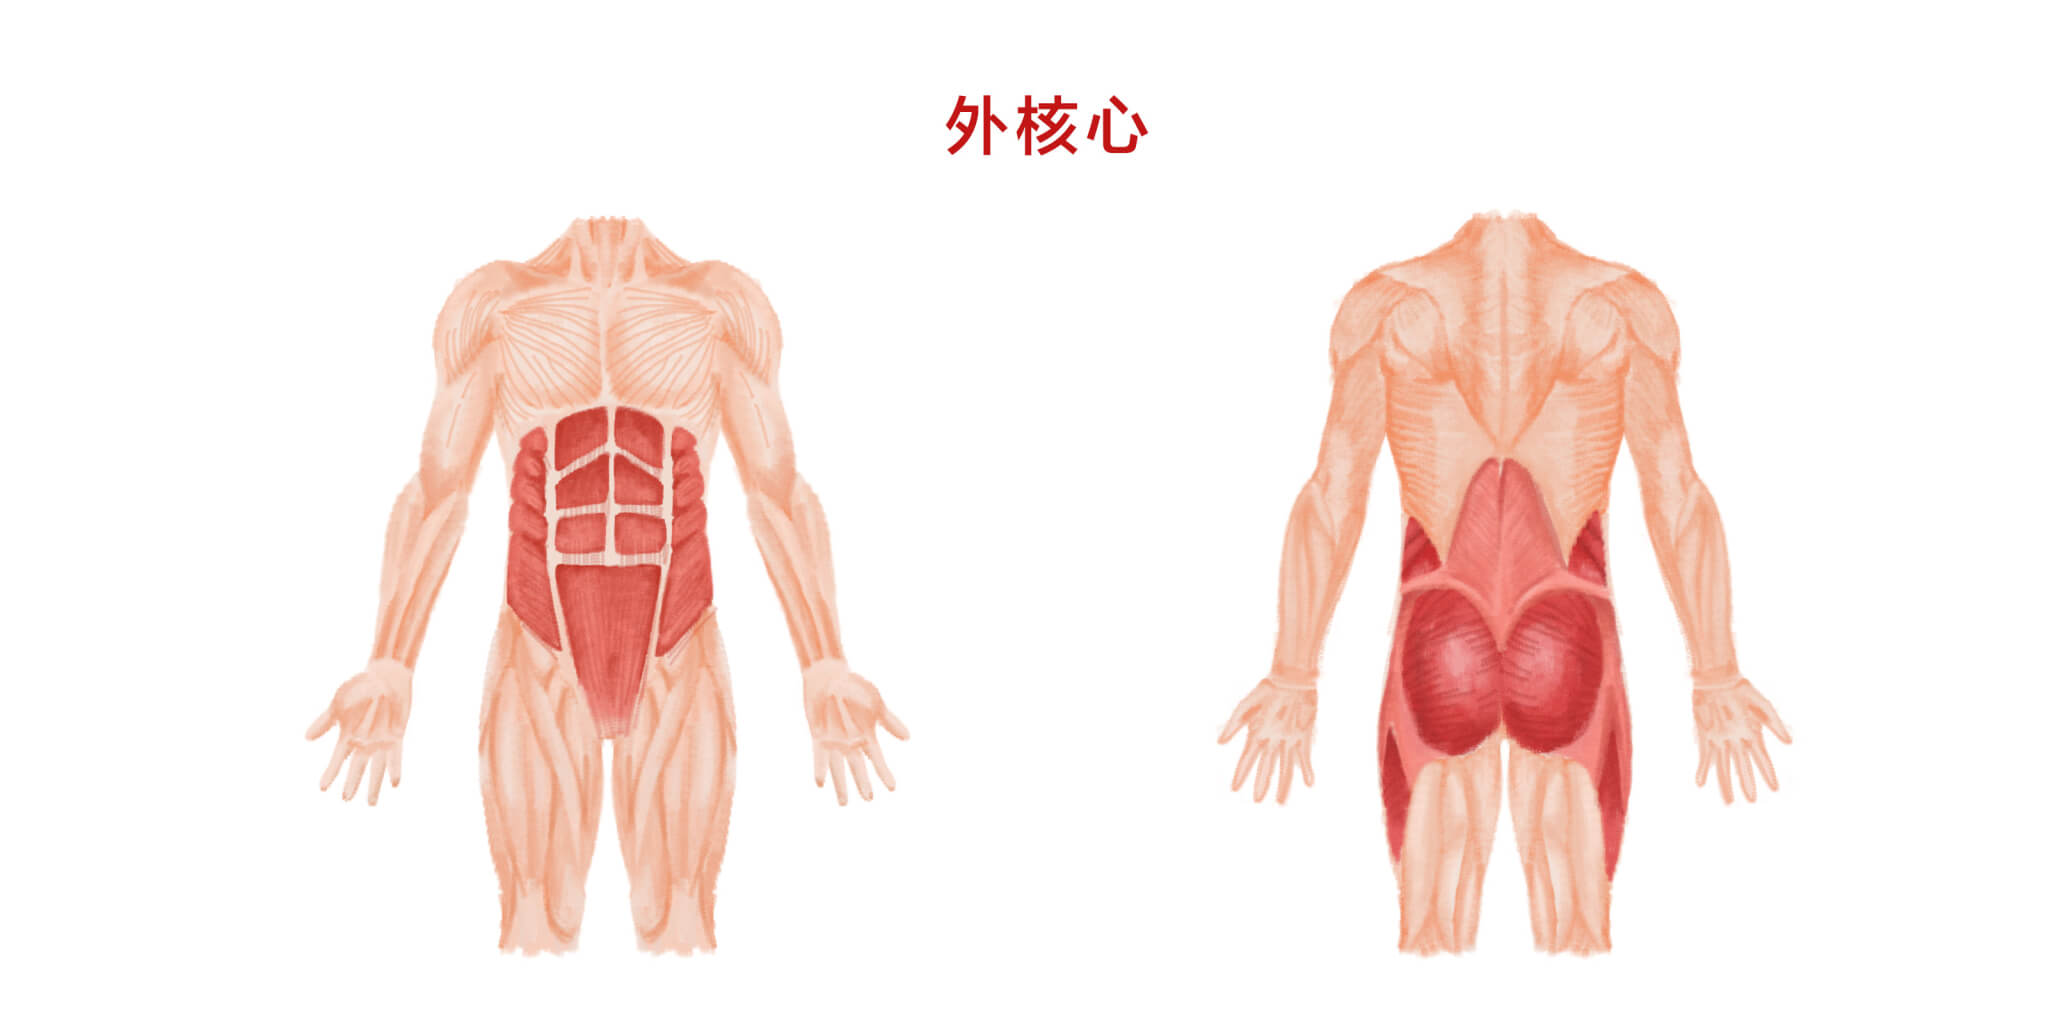 1-背部肌肉-外核心